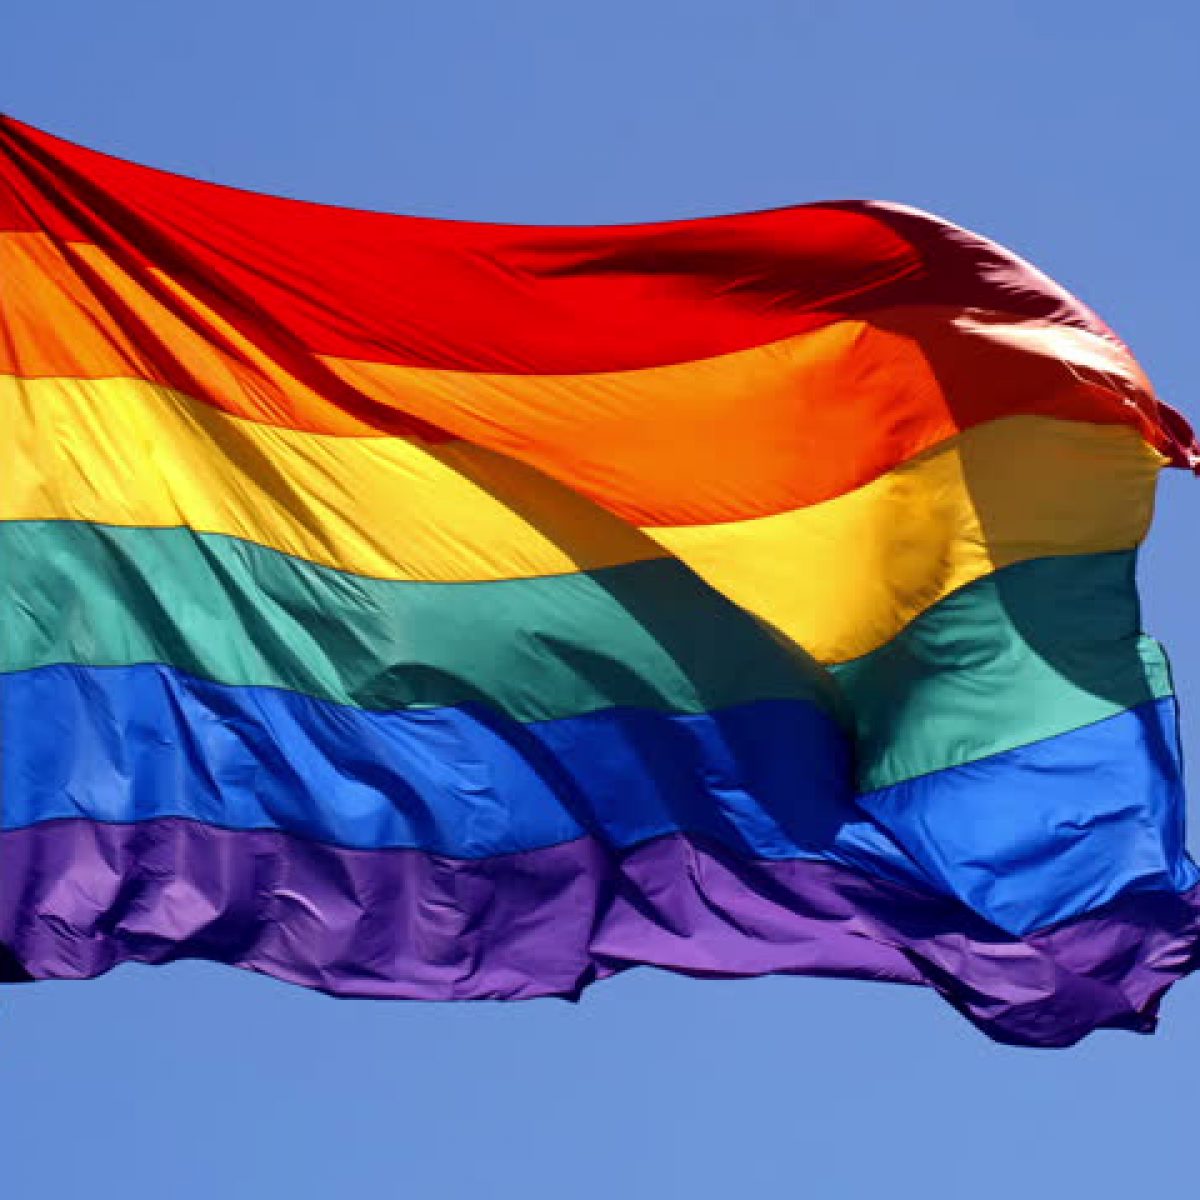 Tình yêu đồng giới đang trở nên ngày càng tự nhiên và đáng chú ý hơn tại Việt Nam trong năm